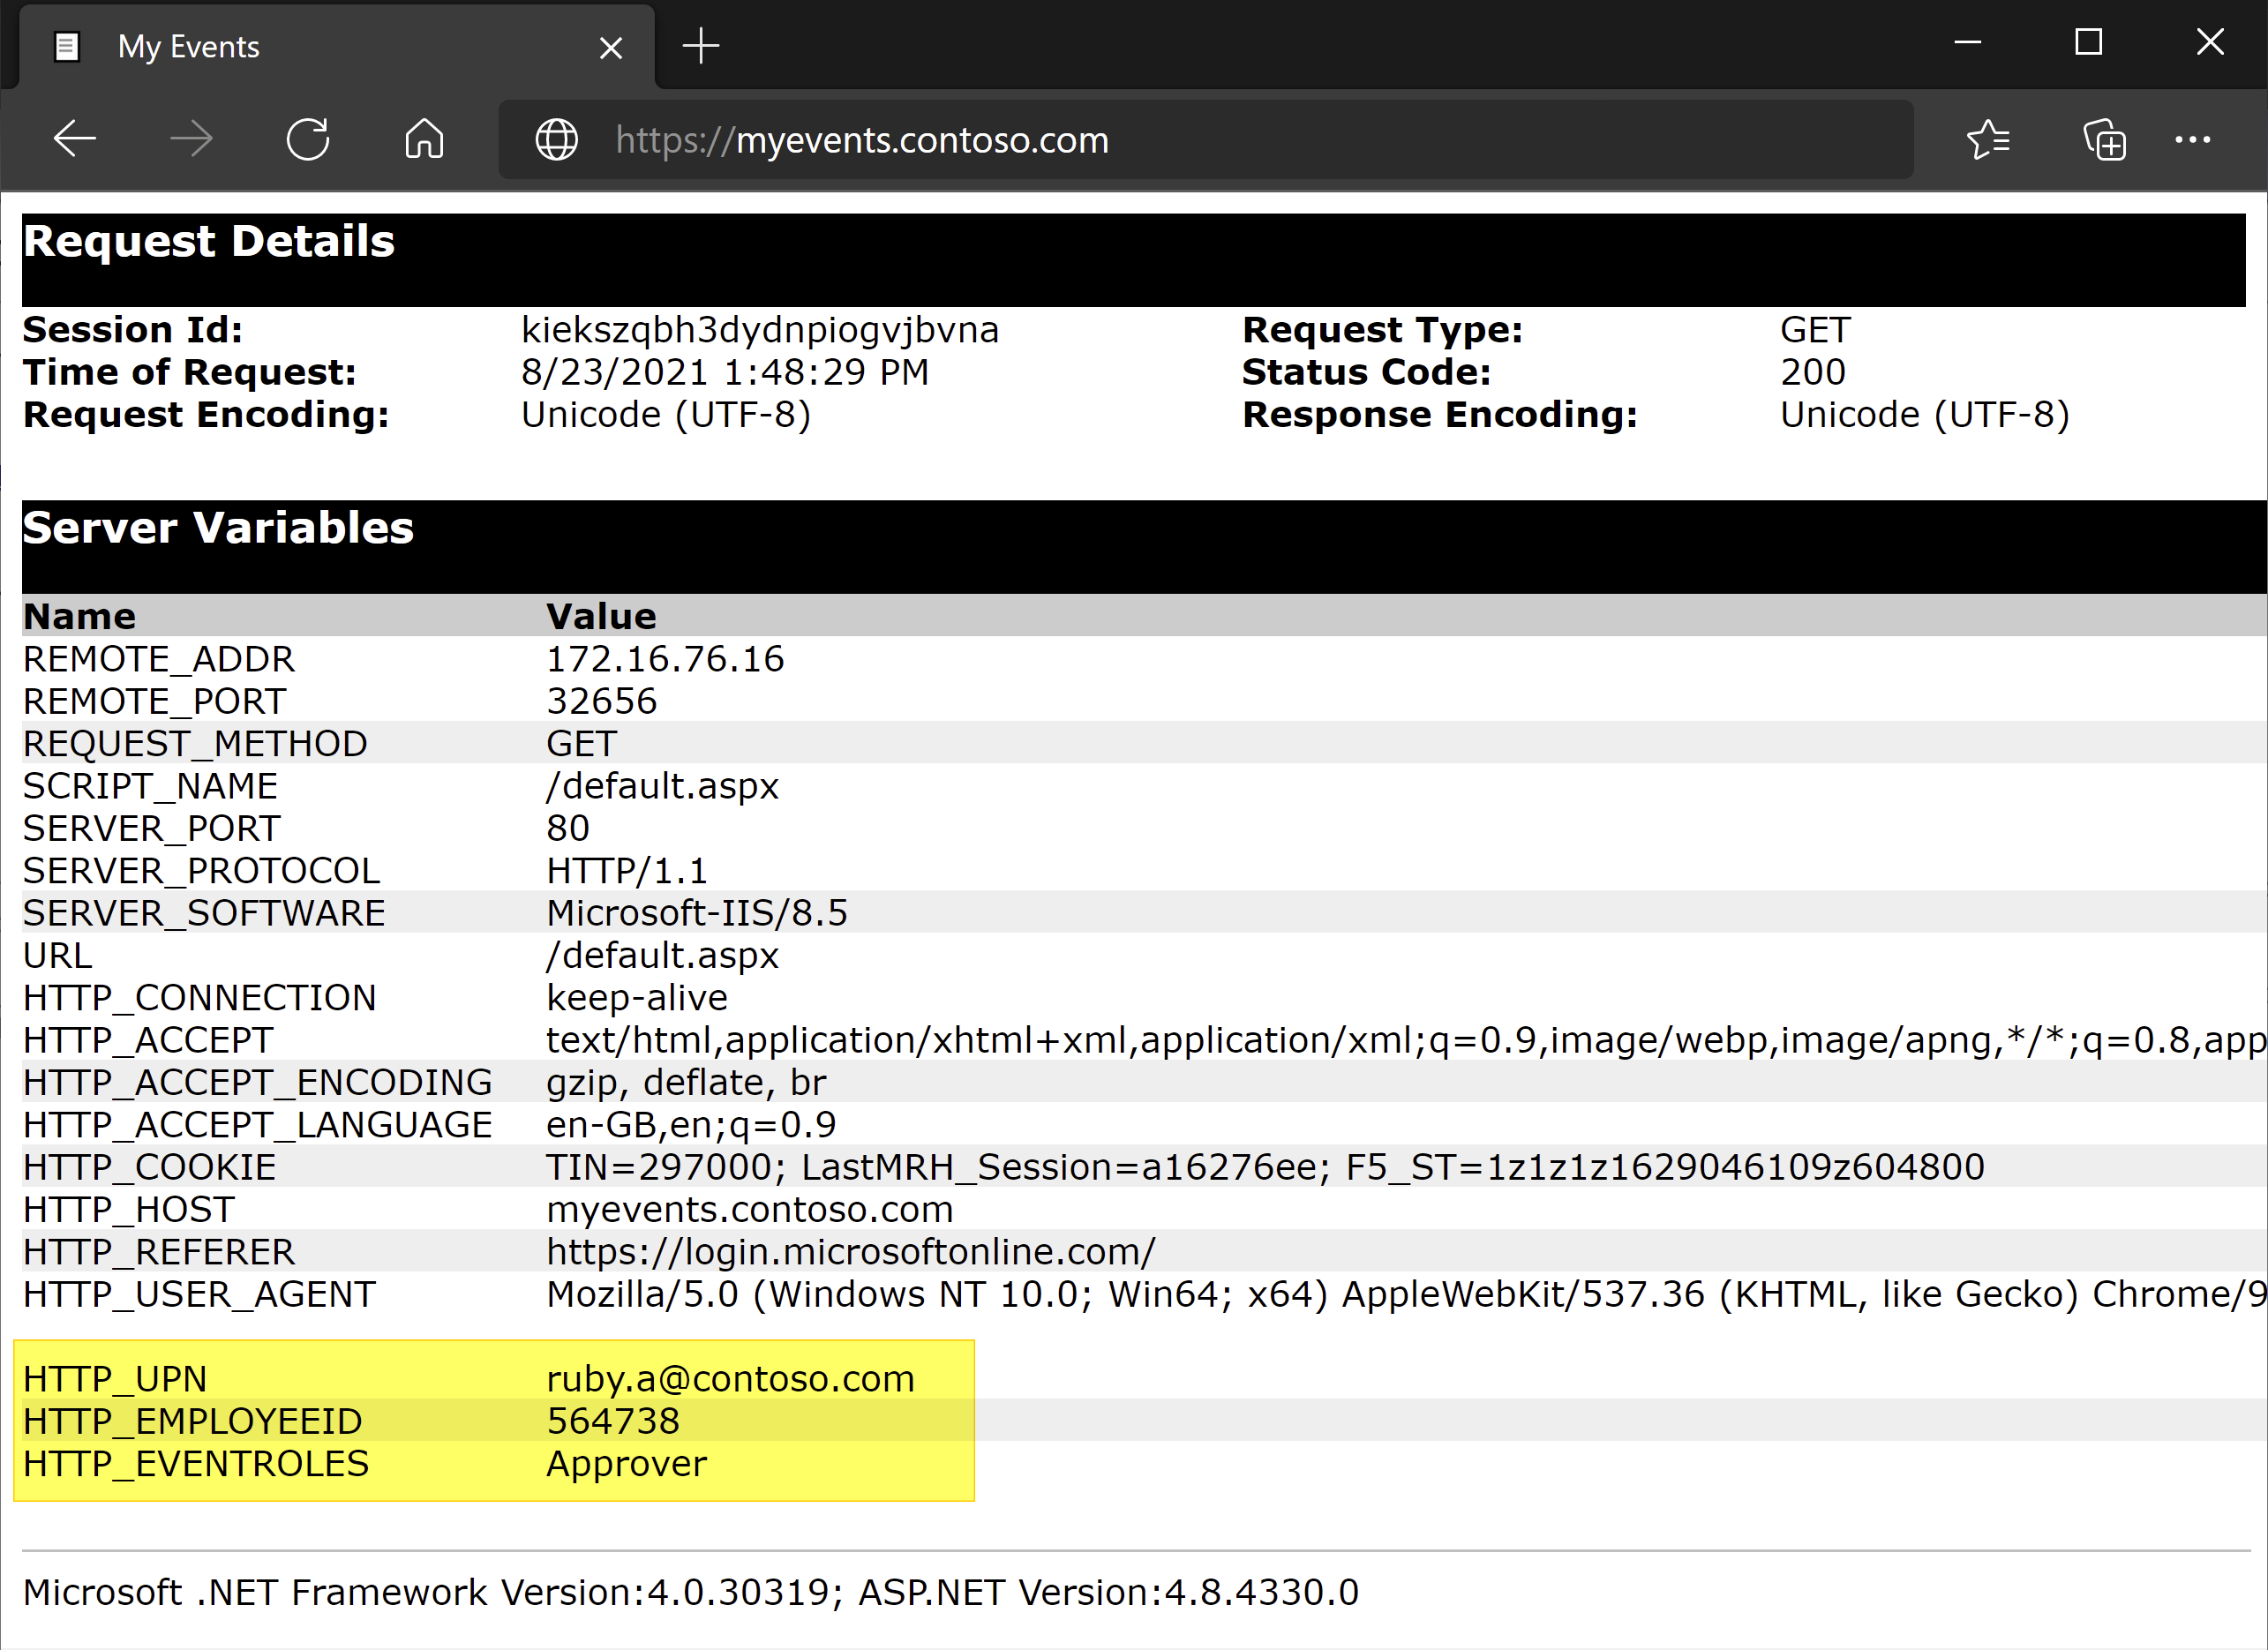 Screenshot: UPN, Mitarbeiter-ID und Ereignisrollen unter Servervariablen.